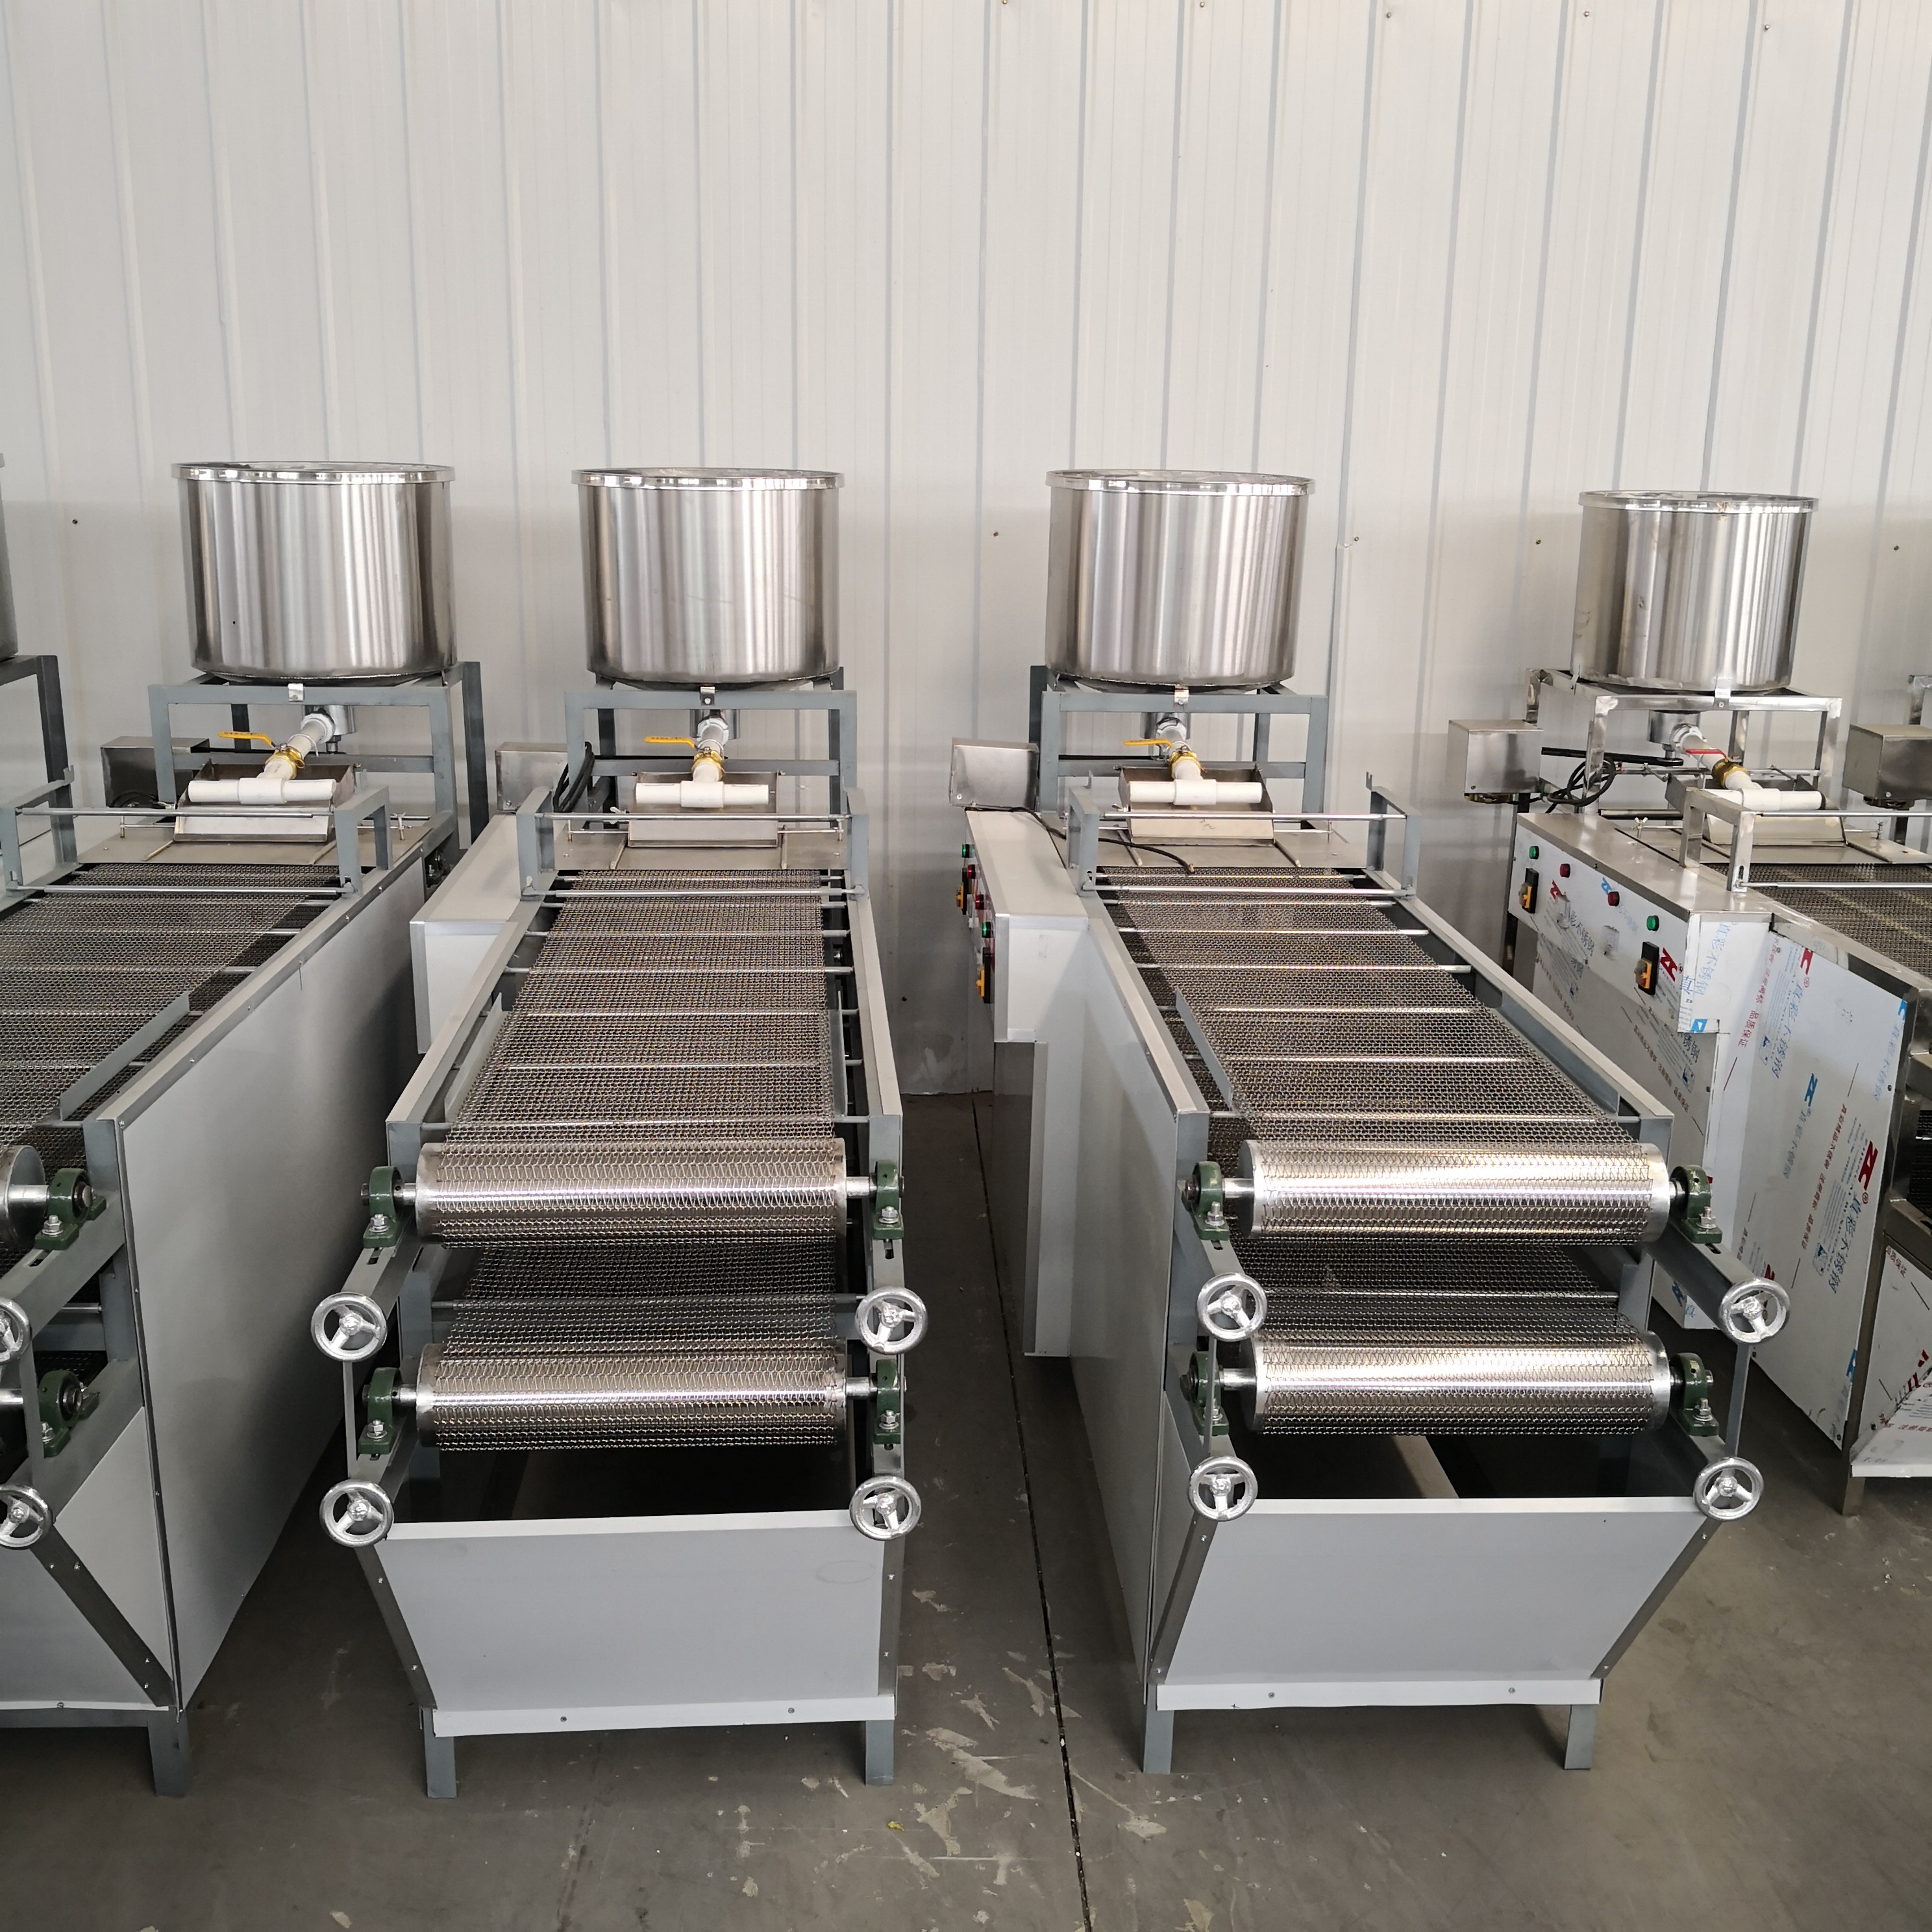 新款商用豆腐皮机器使用操作提供技术培训学习 全自动豆腐皮机设备厂家 河南豆将3